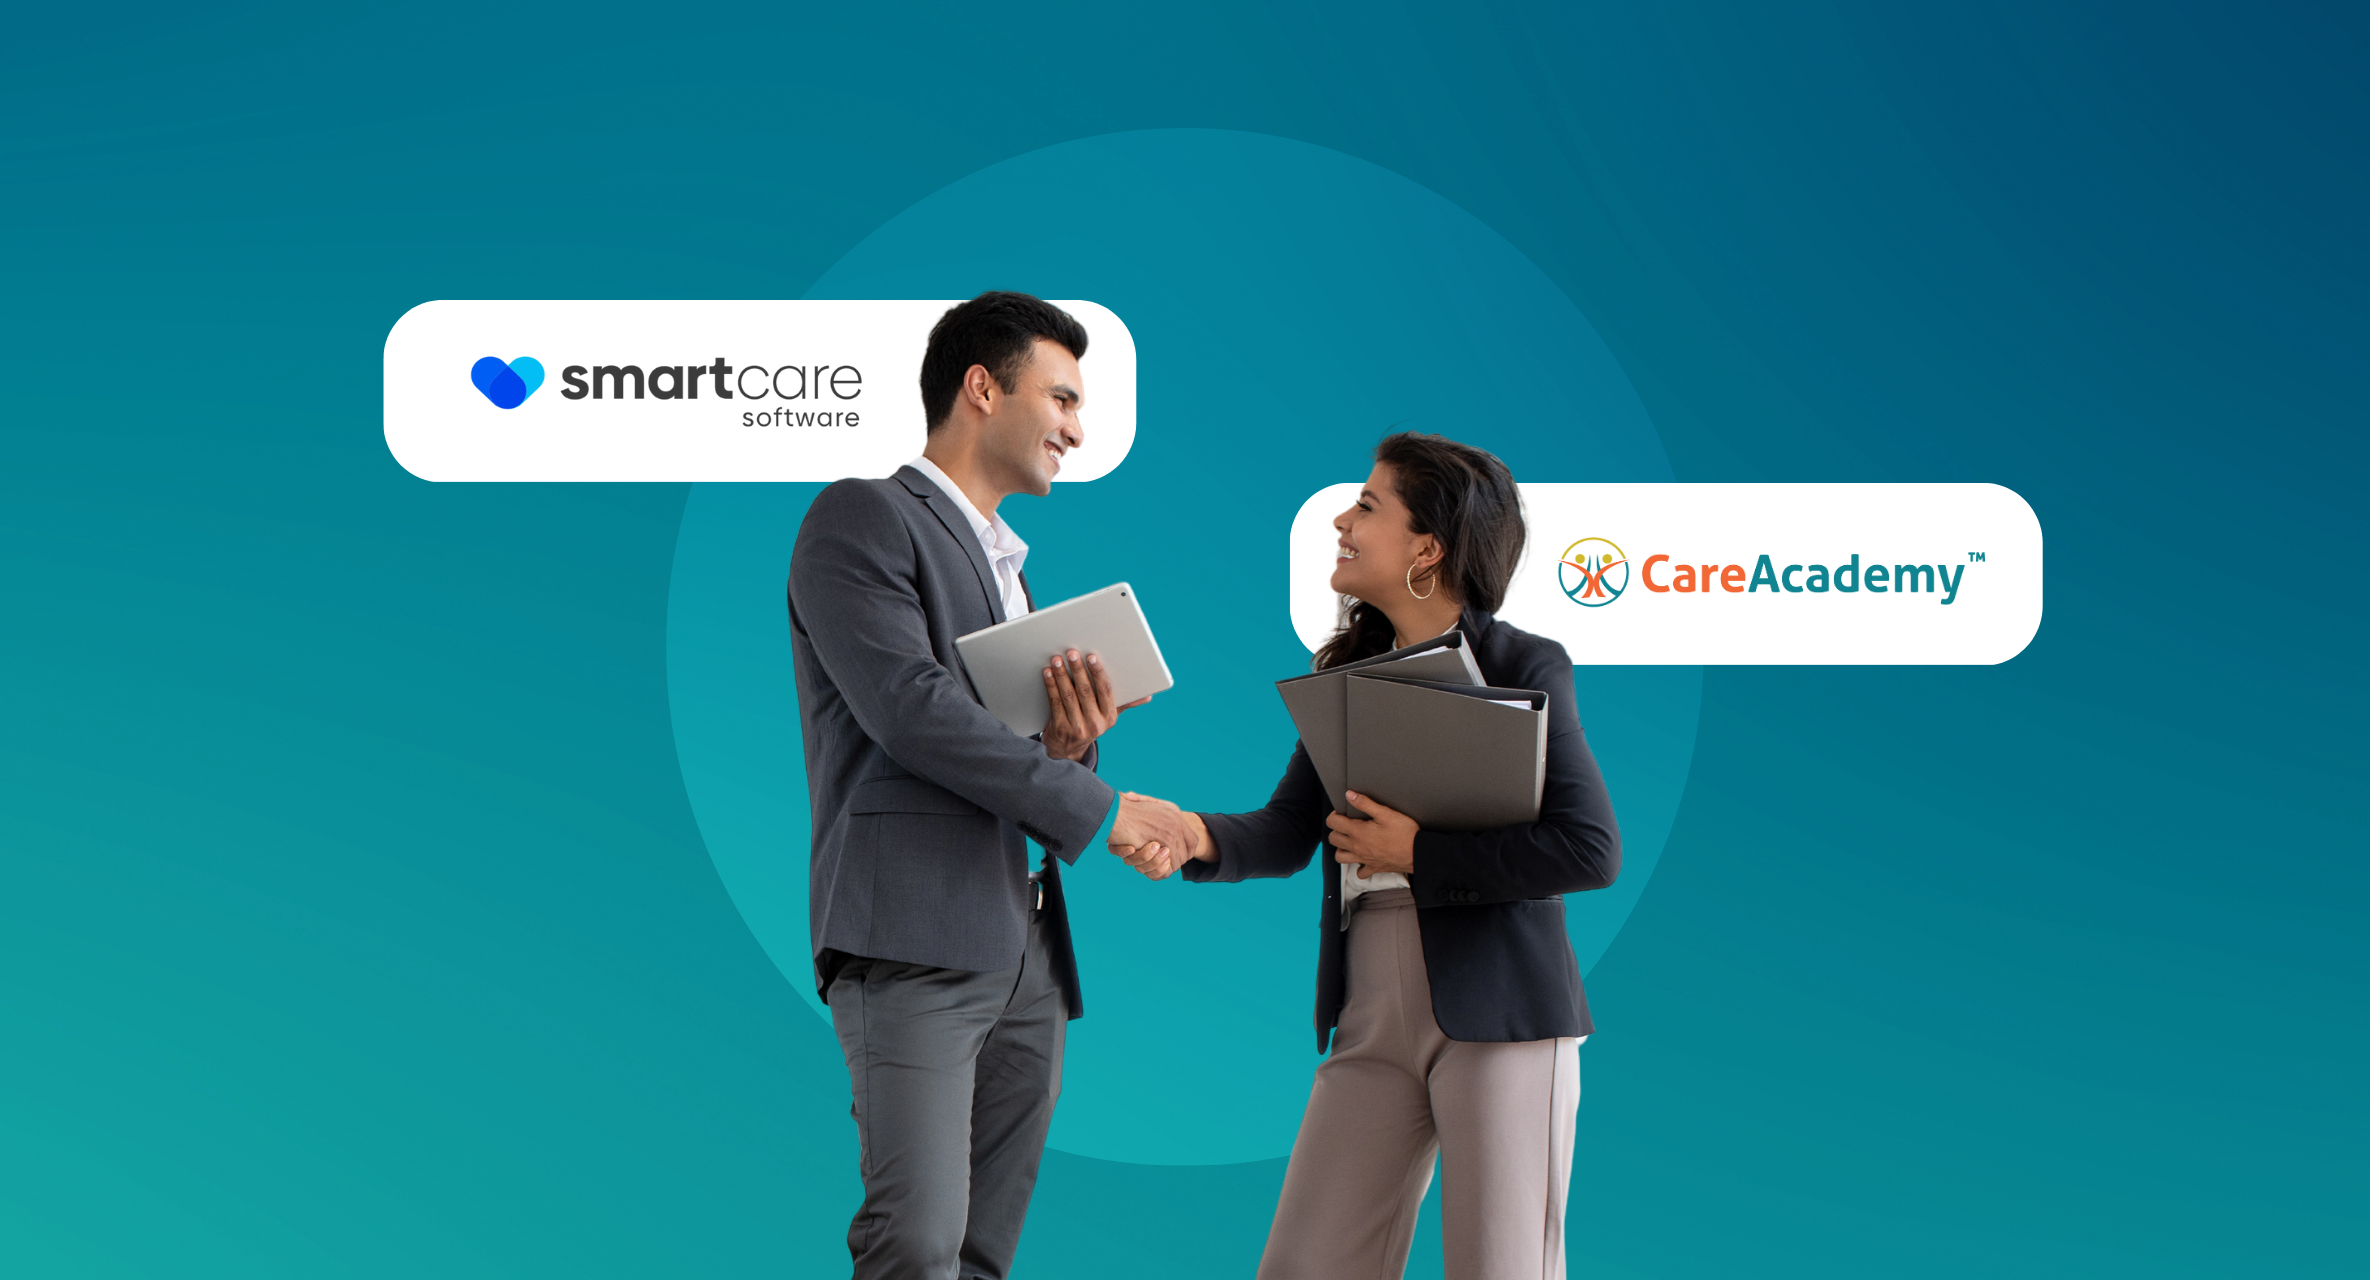 careacademy smartcare integration streamlines home care operations